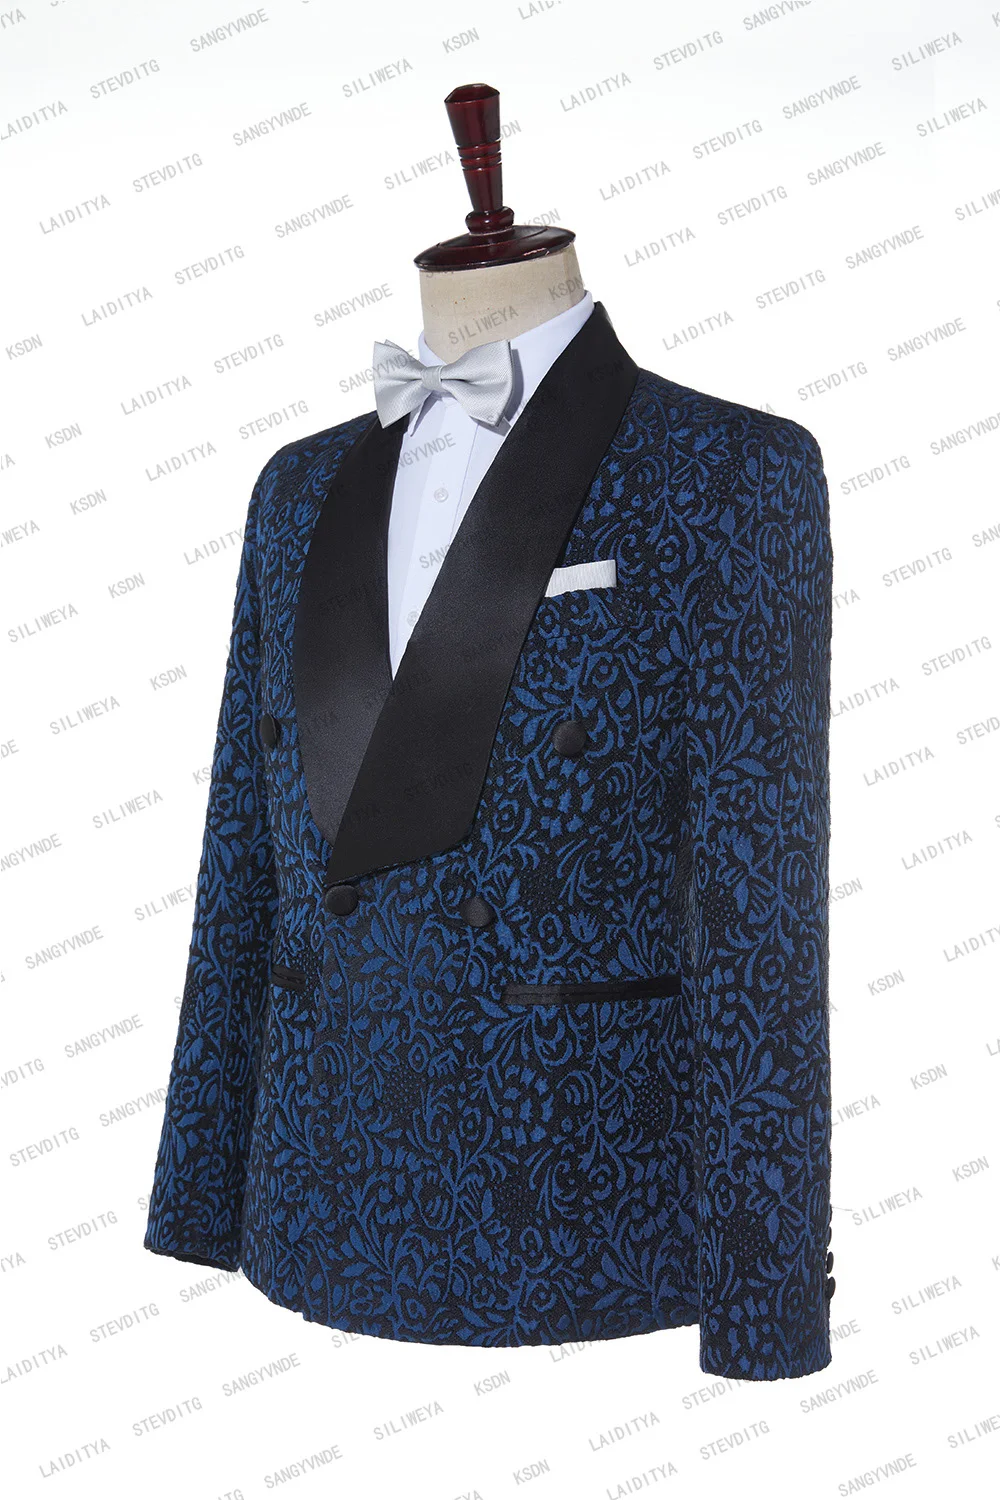 2023 כחול פרחוני אקארד חליפות גברים Slim Fit עם כפול עם חזה החתונה טוקסידו השושבינים סריג שחור דש האופנה הגברי - 3